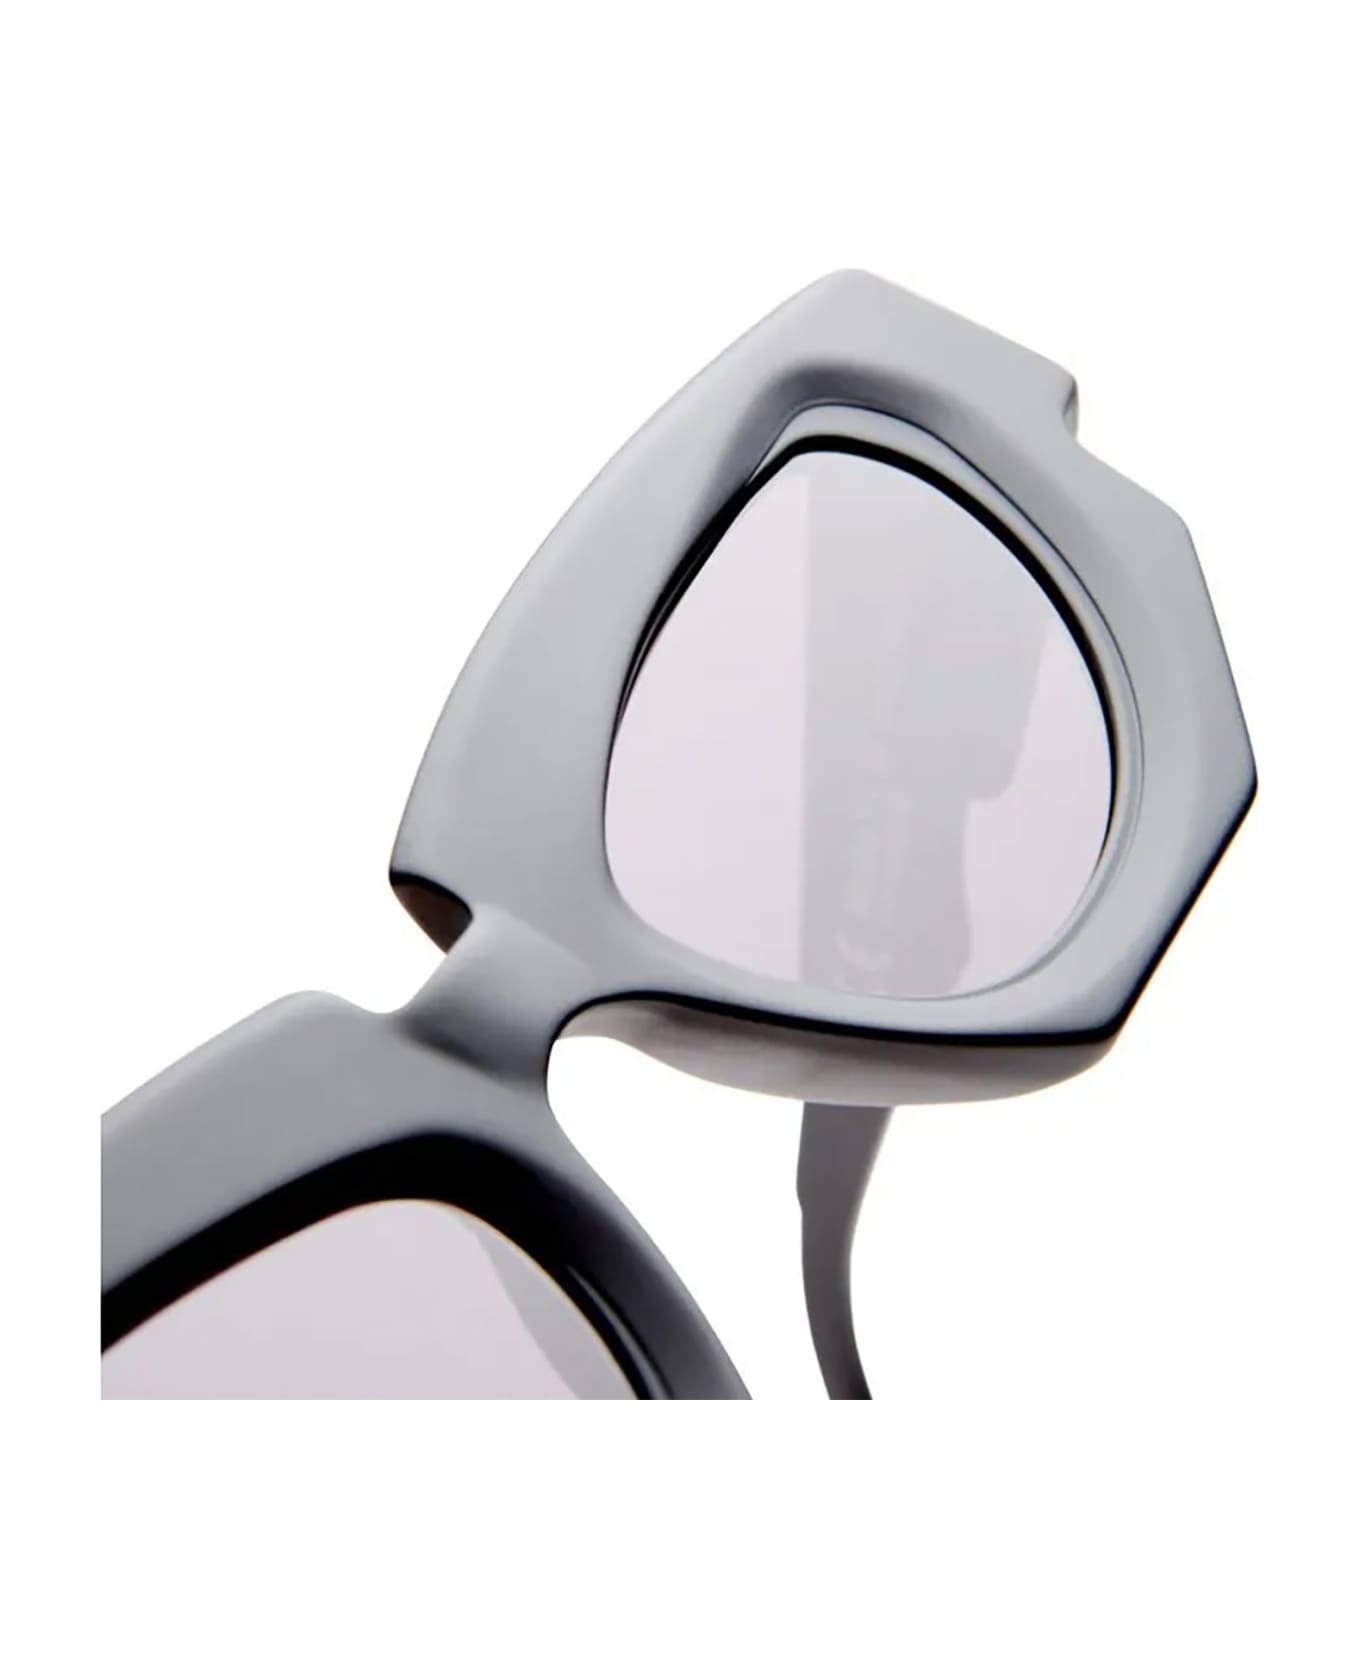 Kuboraum F5 Sunglasses - Grey サングラス